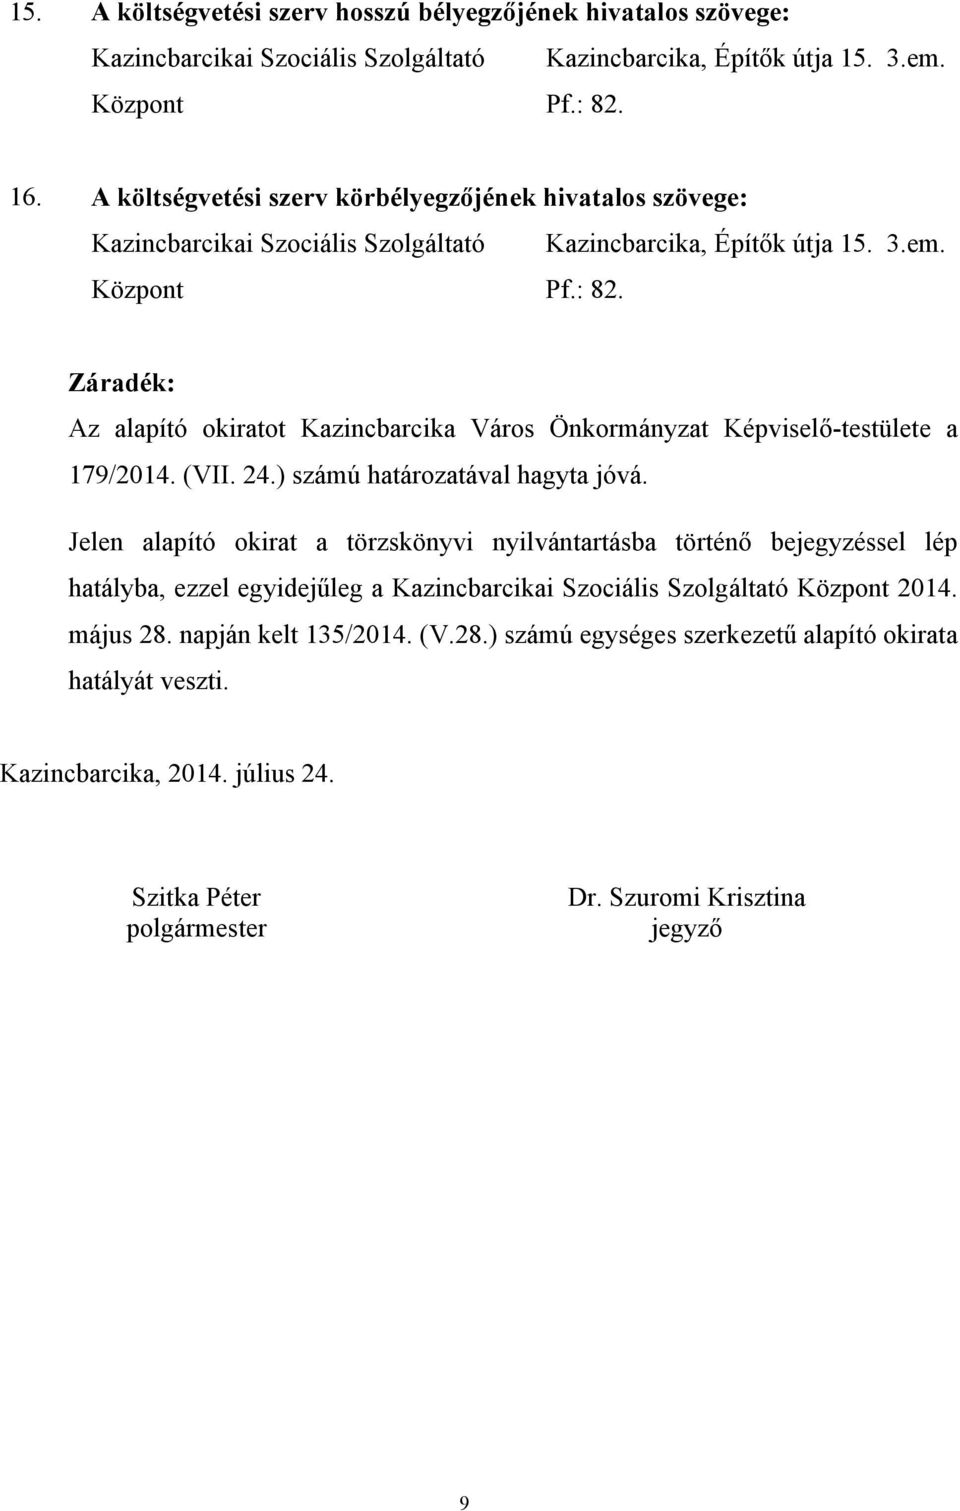 Záradék: Az alapító okiratot Kazincbarcika Város Önkormányzat Képviselő-testülete a 179/2014. (VII. 24.) számú határozatával hagyta jóvá.